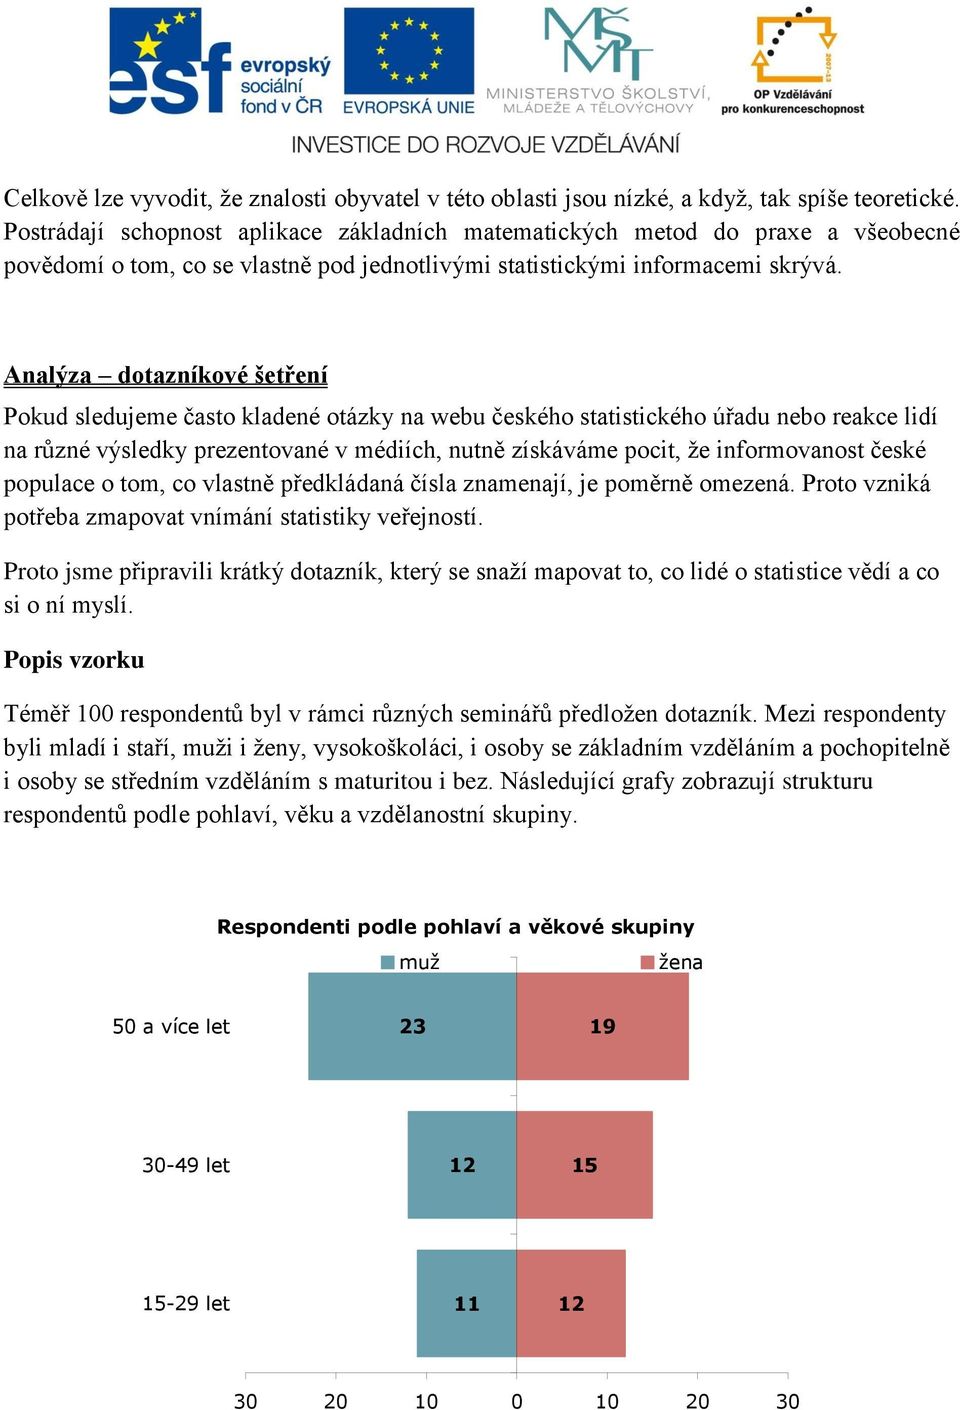 Analýza dotazníkové šetření Pokud sledujeme často kladené otázky na webu českého statistického úřadu nebo reakce lidí na různé výsledky prezentované v médiích, nutně získáváme pocit, že informovanost